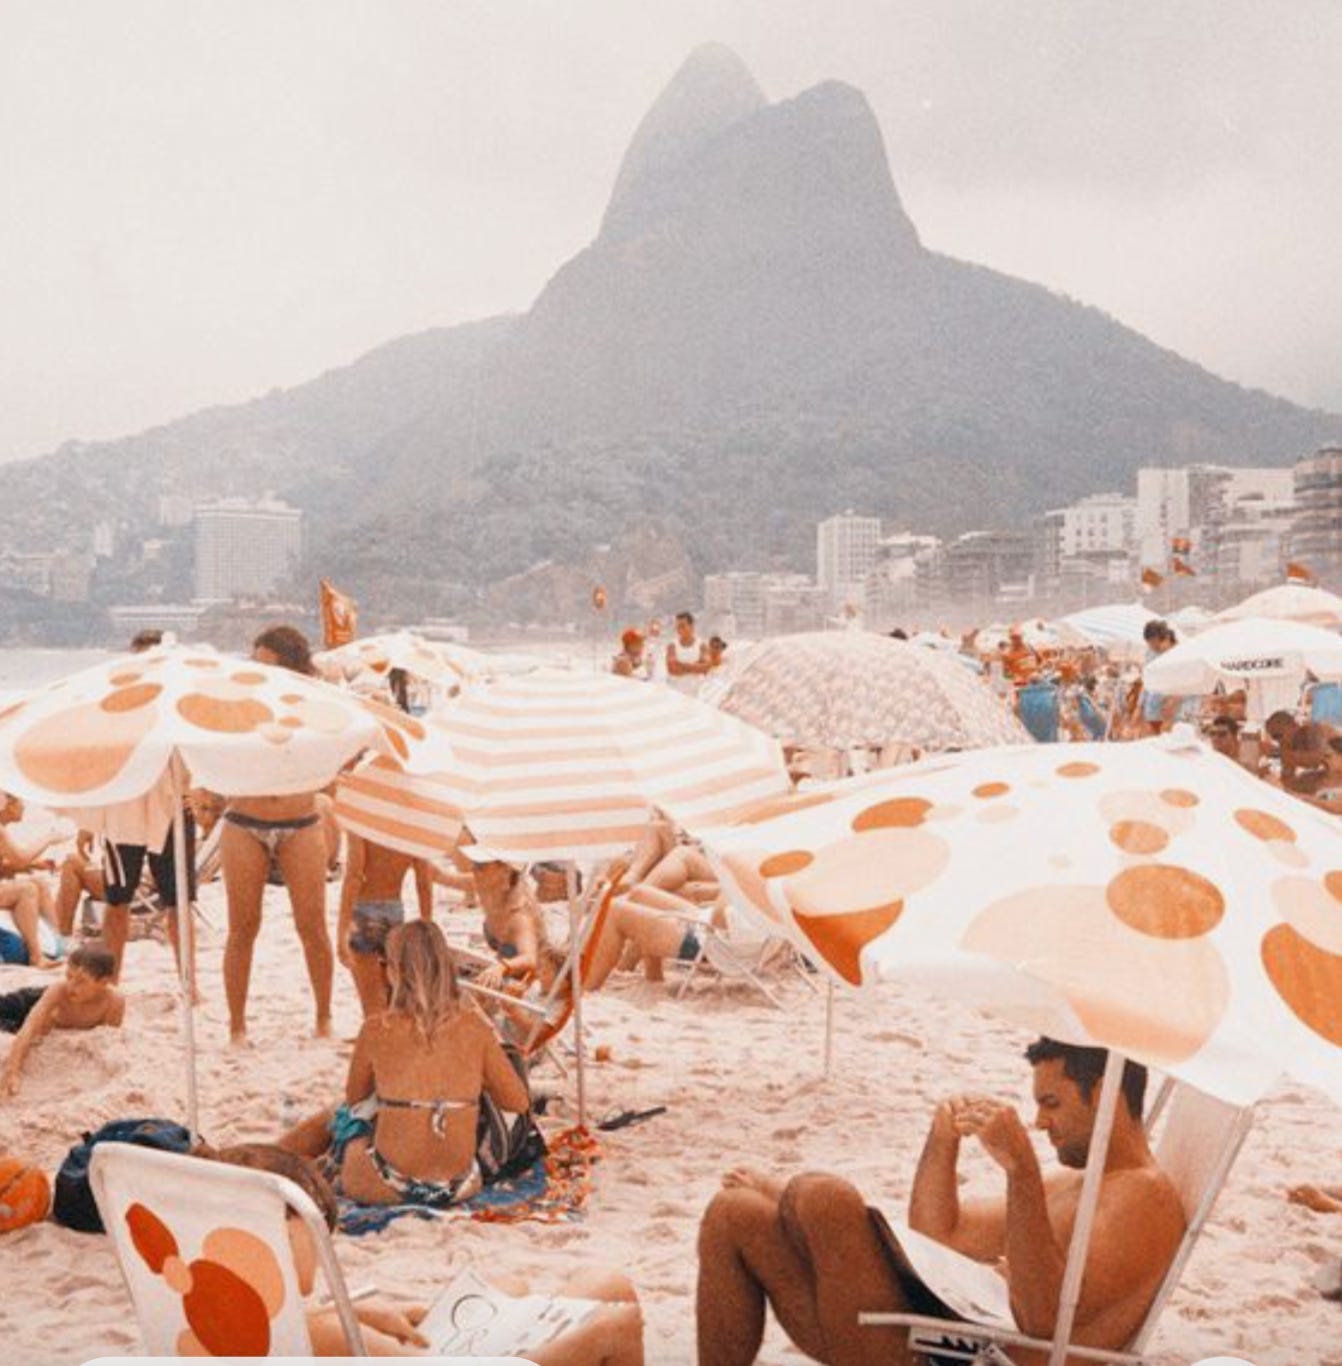 11 memes engraçados sobre o APP das praias - Diário do Rio de Janeiro